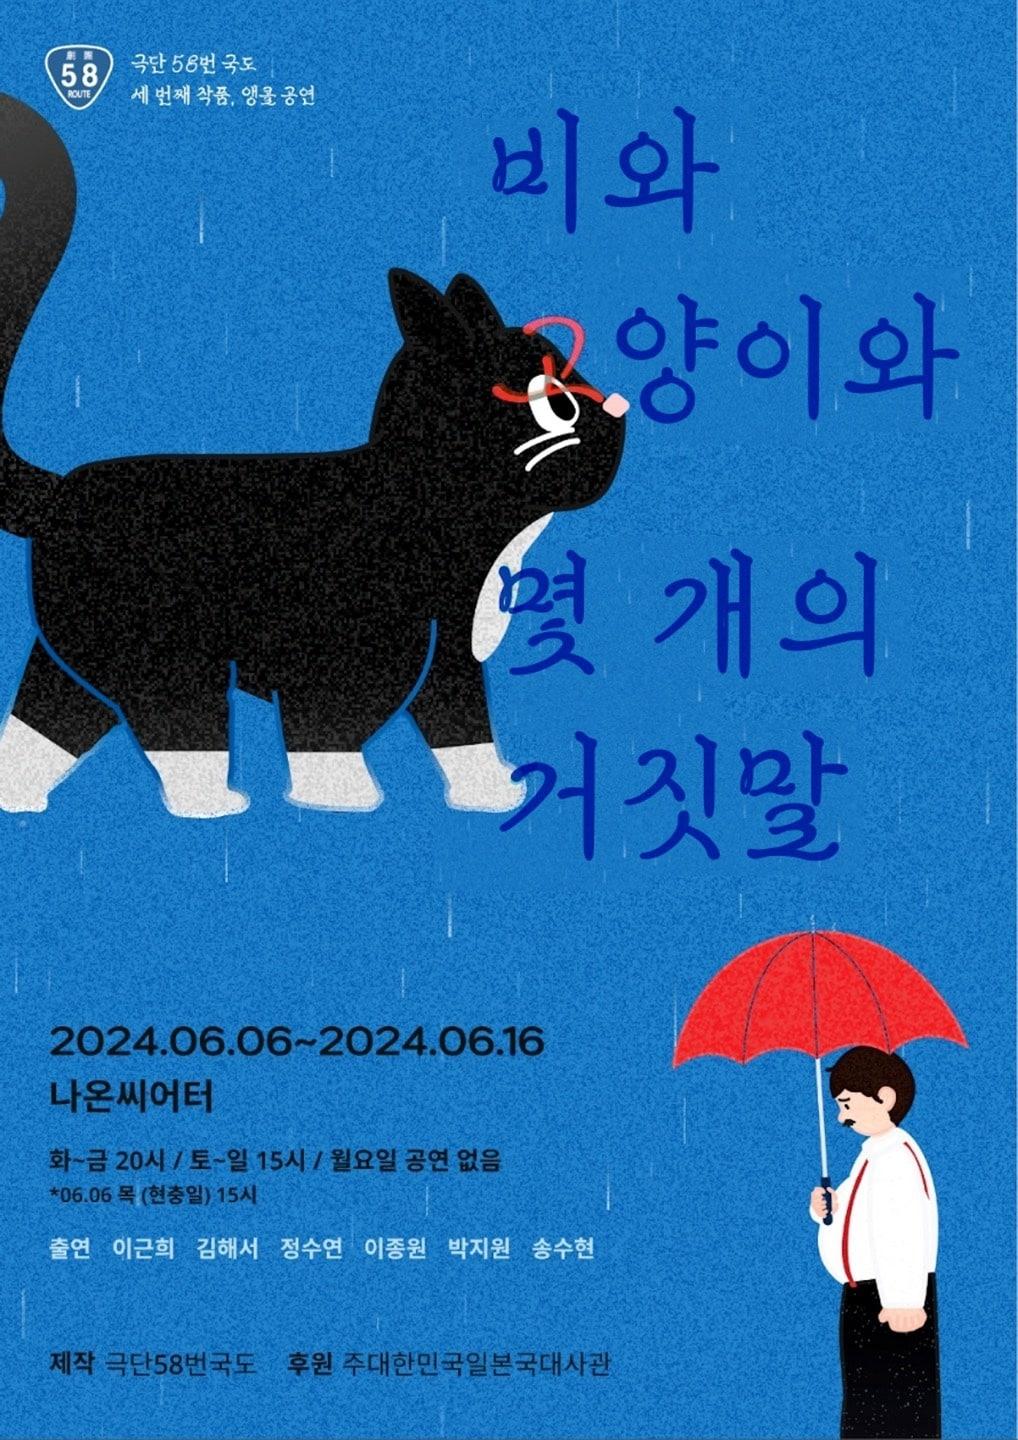 연극 &#39;비와 고양이와 몇 개의 거짓말&#39; 포스터&#40;극단 58번 국도 제공&#41;